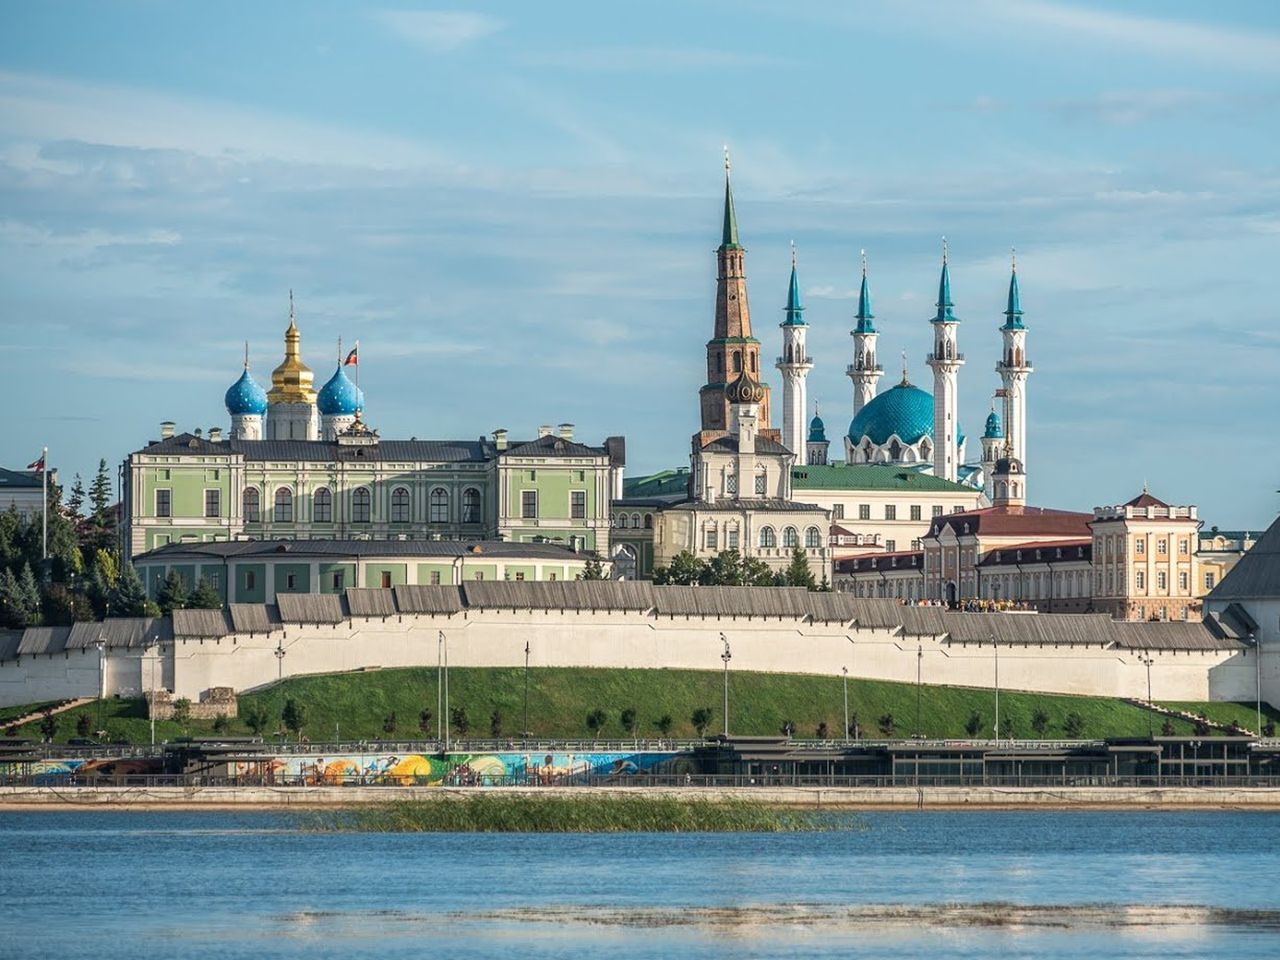 Кремль и обзорная по Казани | Цена 8750₽, отзывы, описание экскурсии